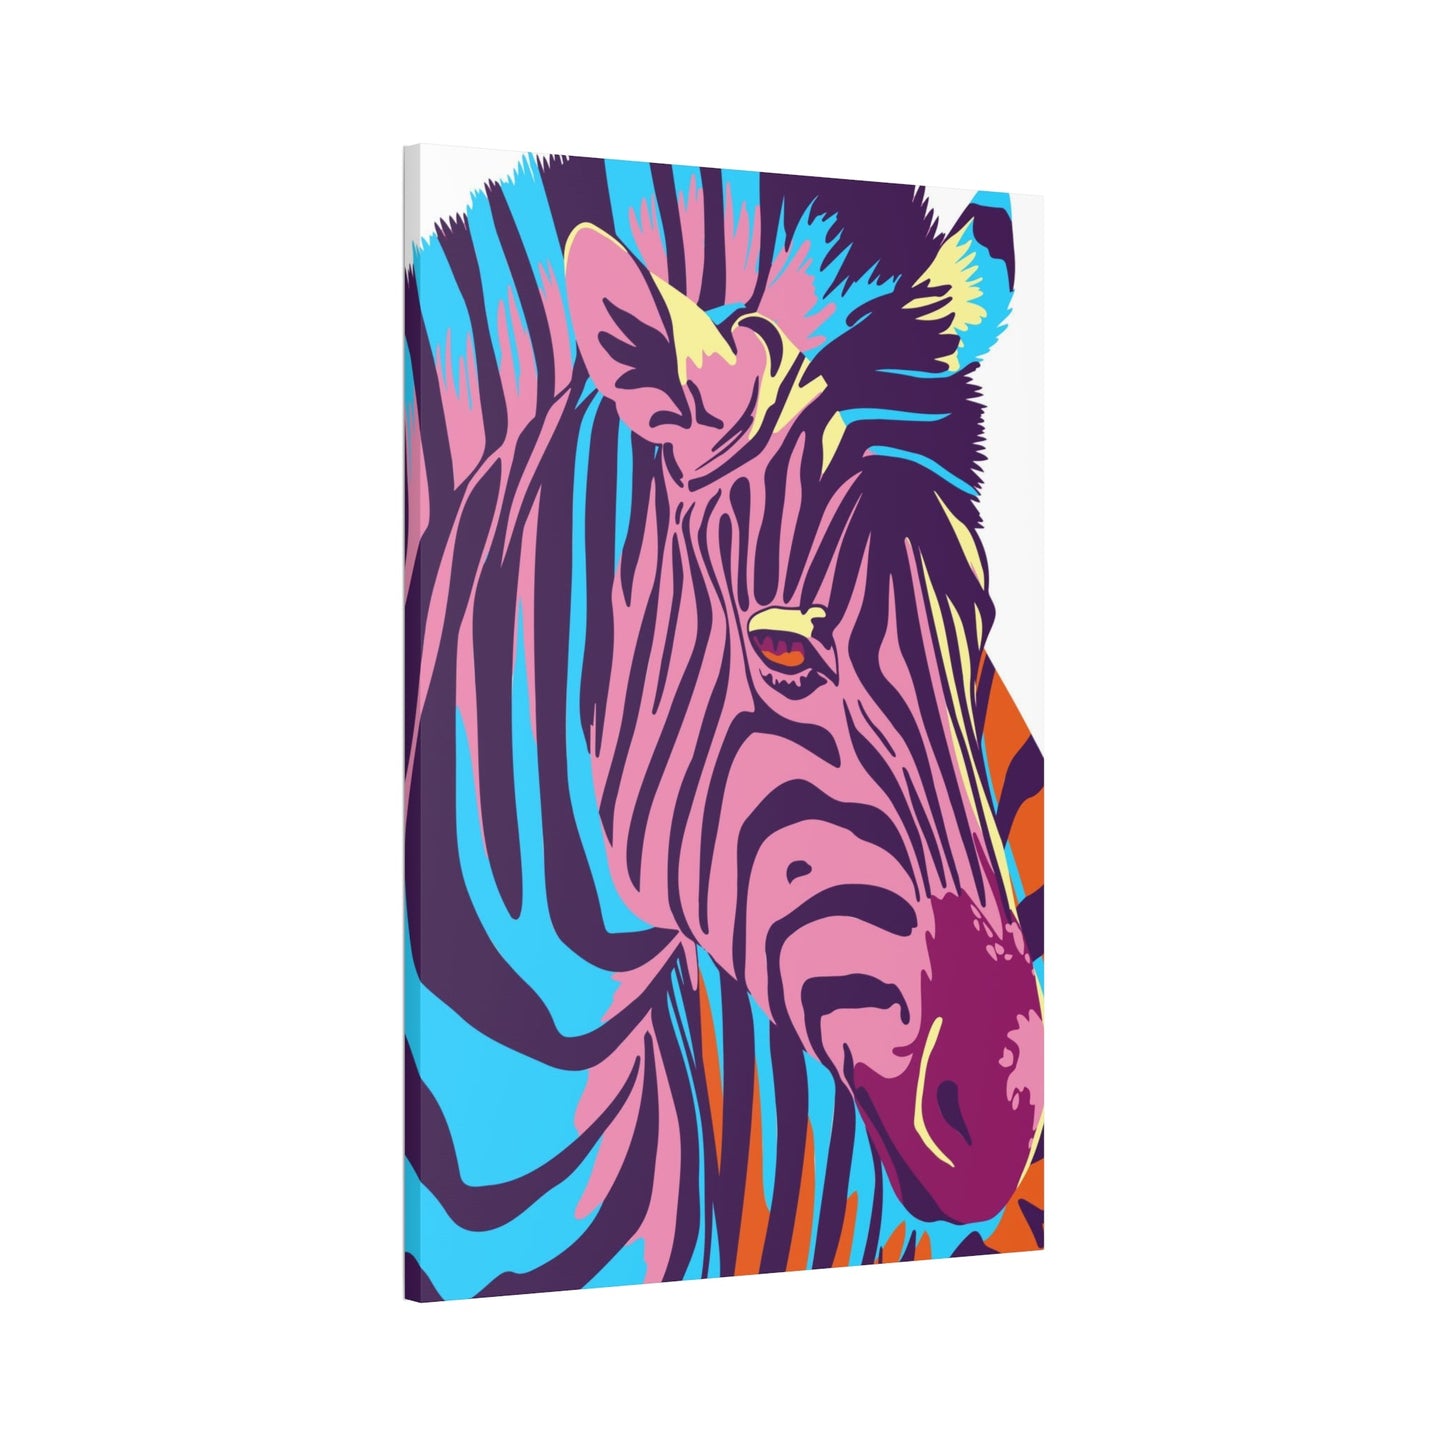 Sleek and Striking: Zebra Print on Framed Poster